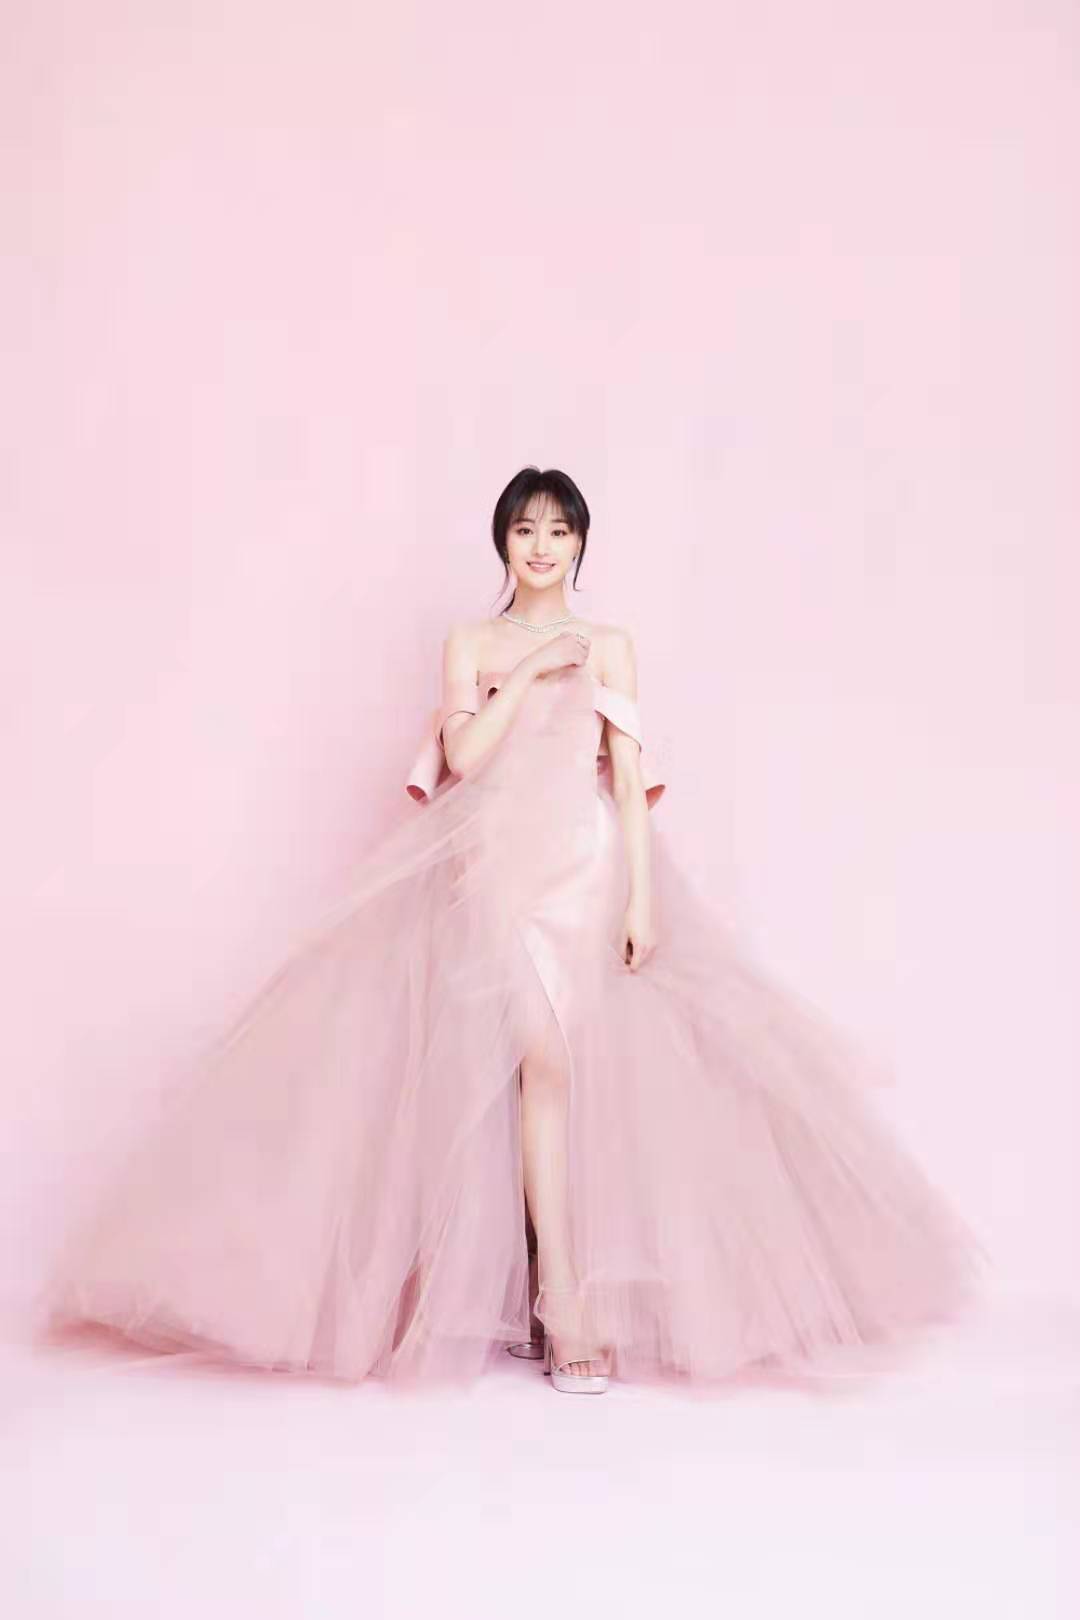 郑爽微博之夜红毯造型太美了,一袭粉色薄纱长裙,宛如小公主!